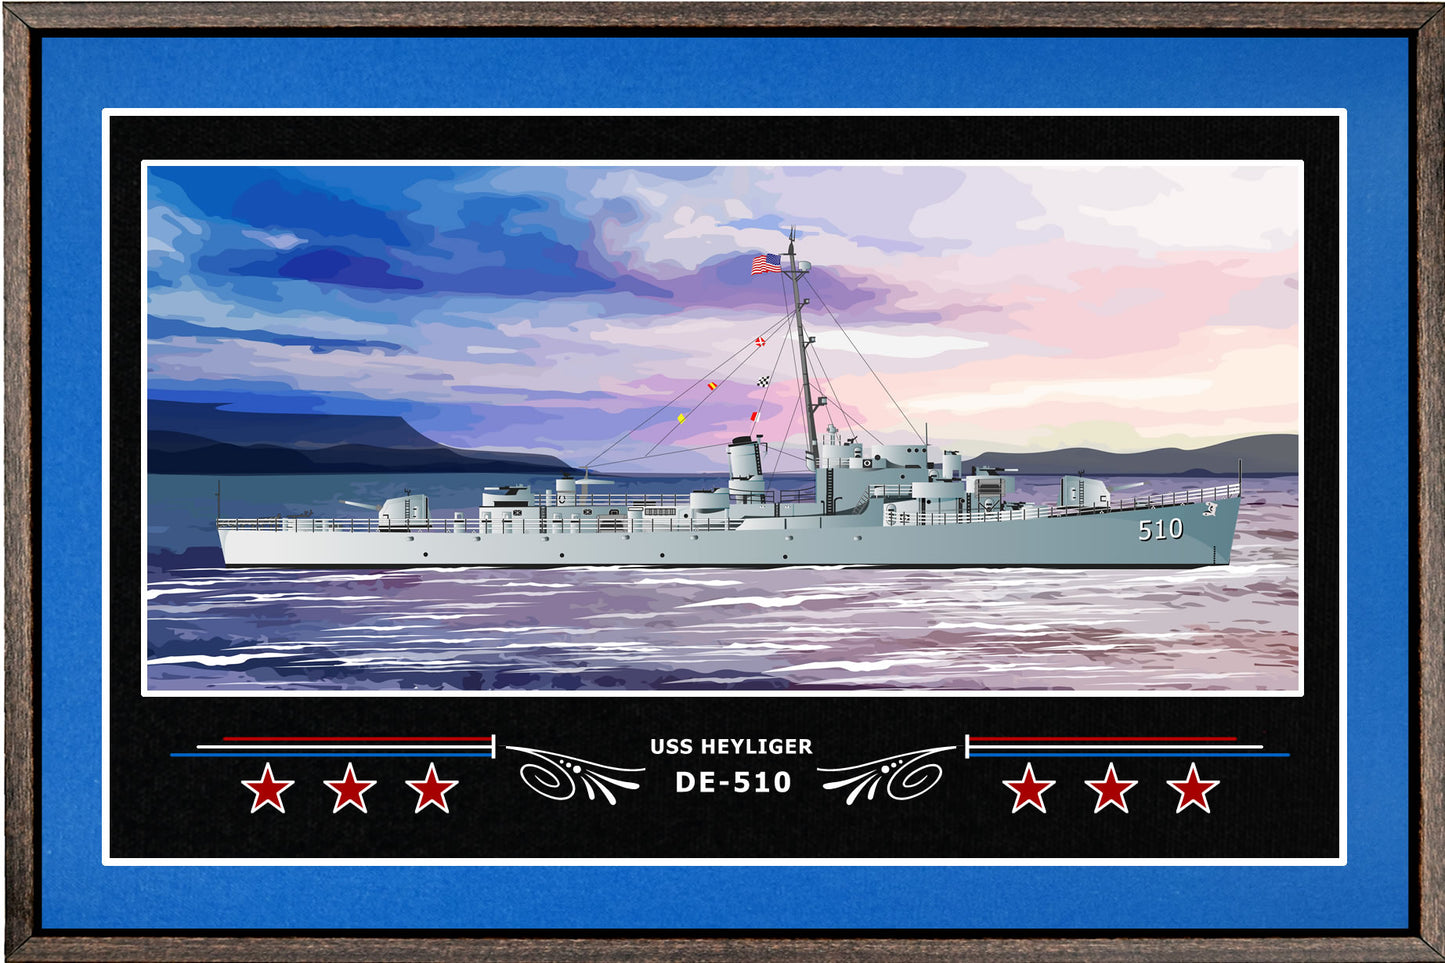 USS HEYLIGER DE 510 BOX FRAMED CANVAS ART BLUE